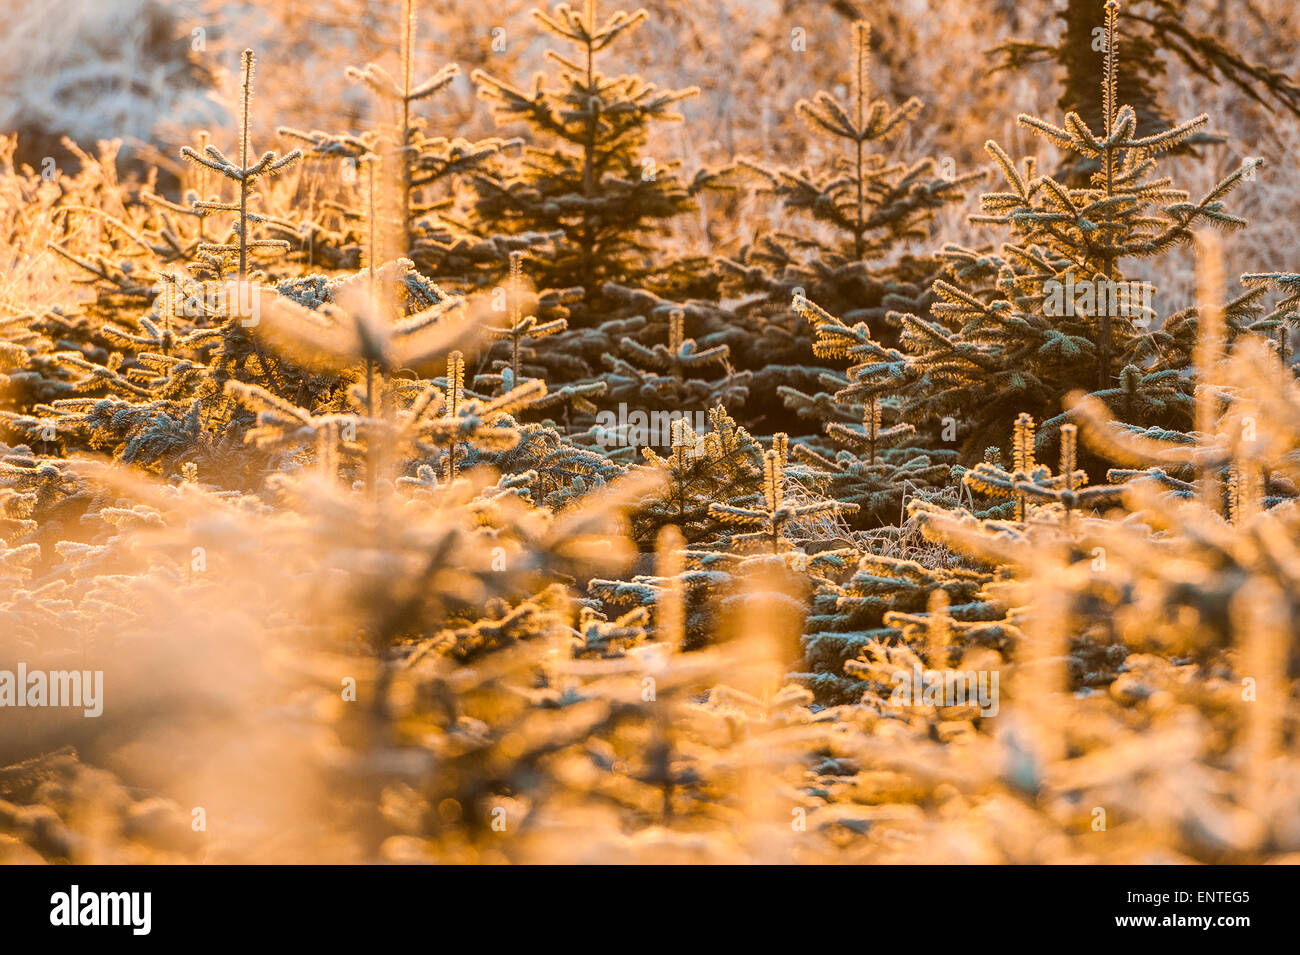 La picea de Sitka helada cubierta de árboles de Navidad en Escocia en una escena de invierno Foto de stock